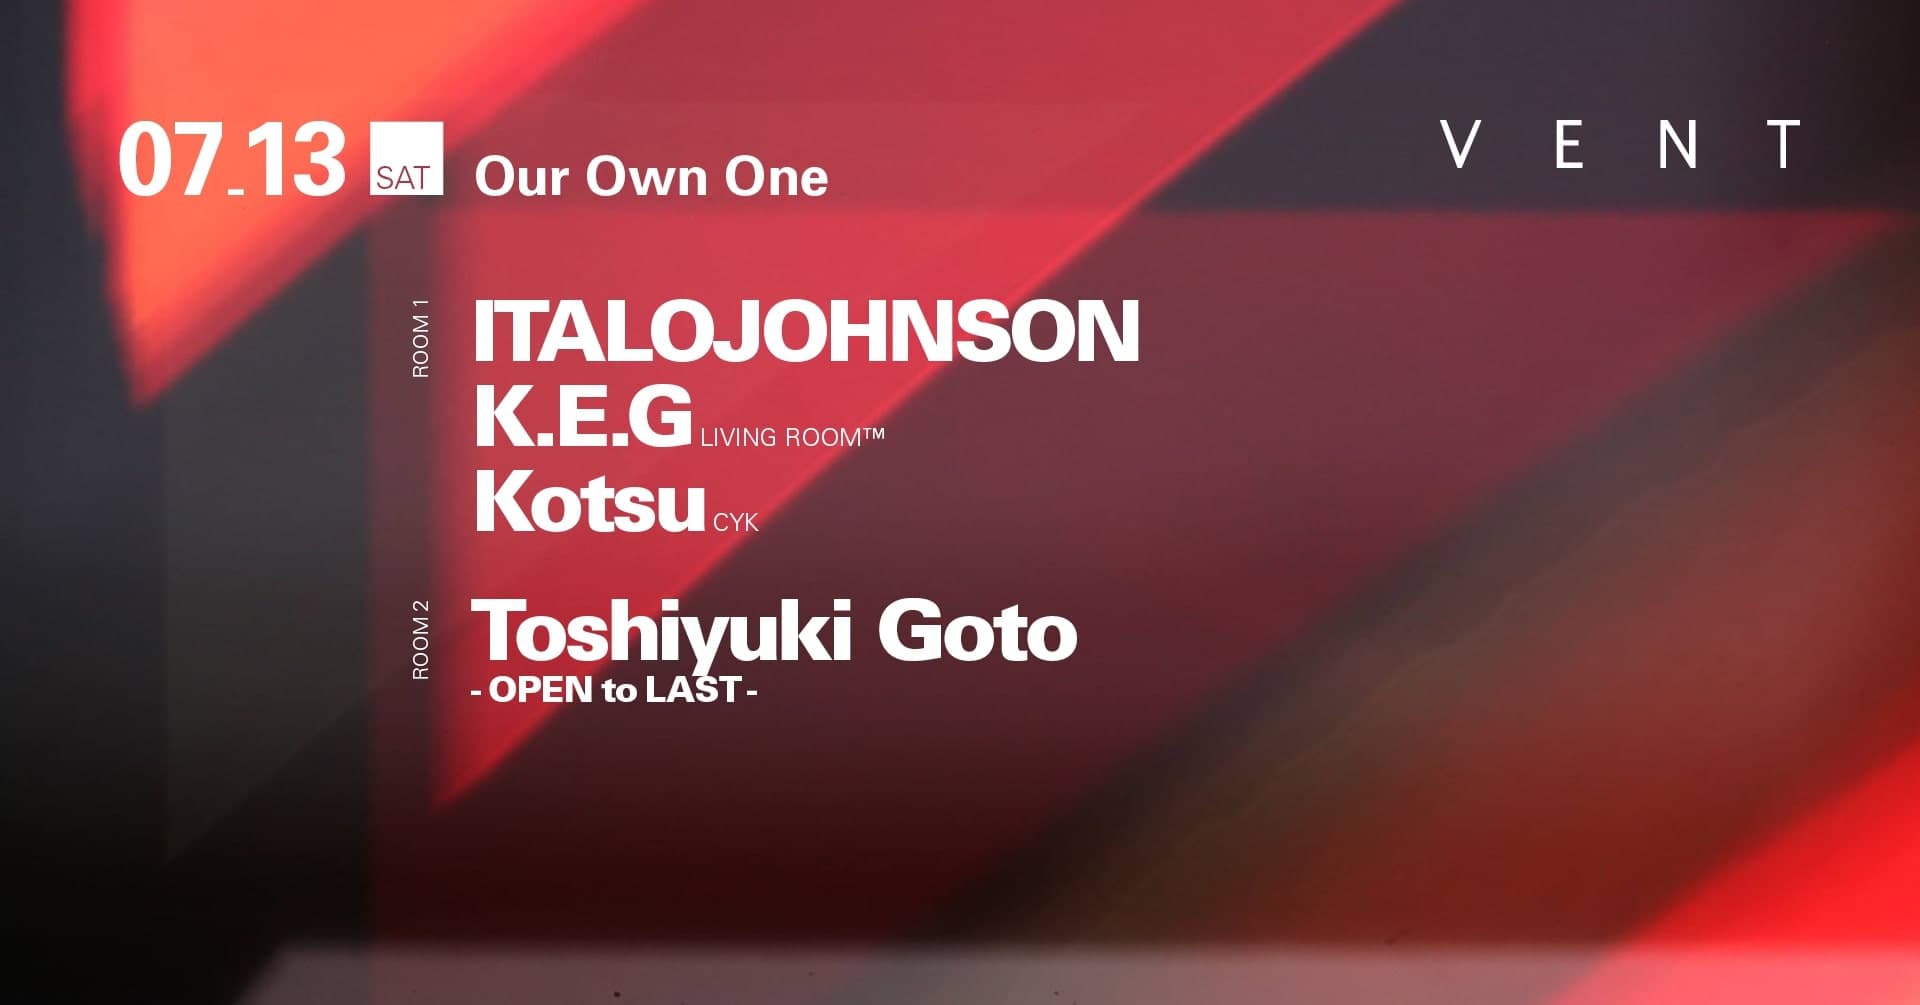 ITALOJOHNSON will be performing at VENT Omotesando